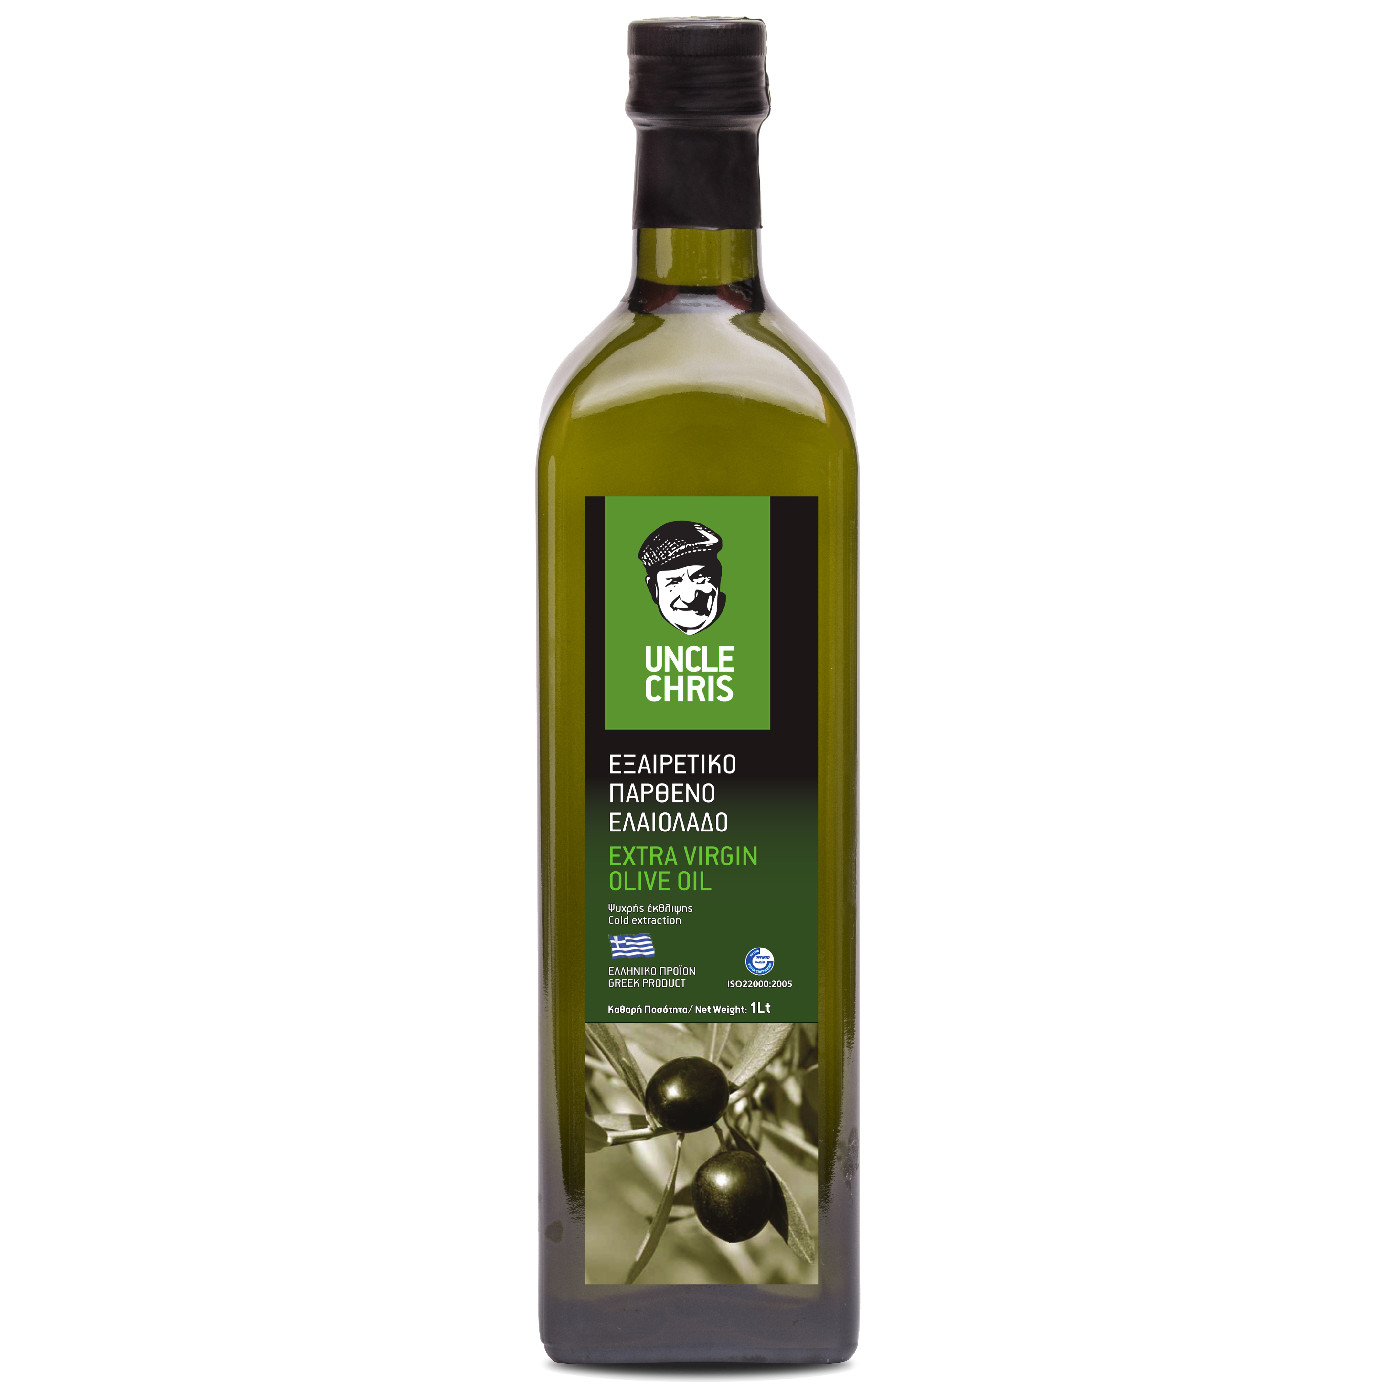 Uncle Chris Extra virgin olive oil marasca 1L